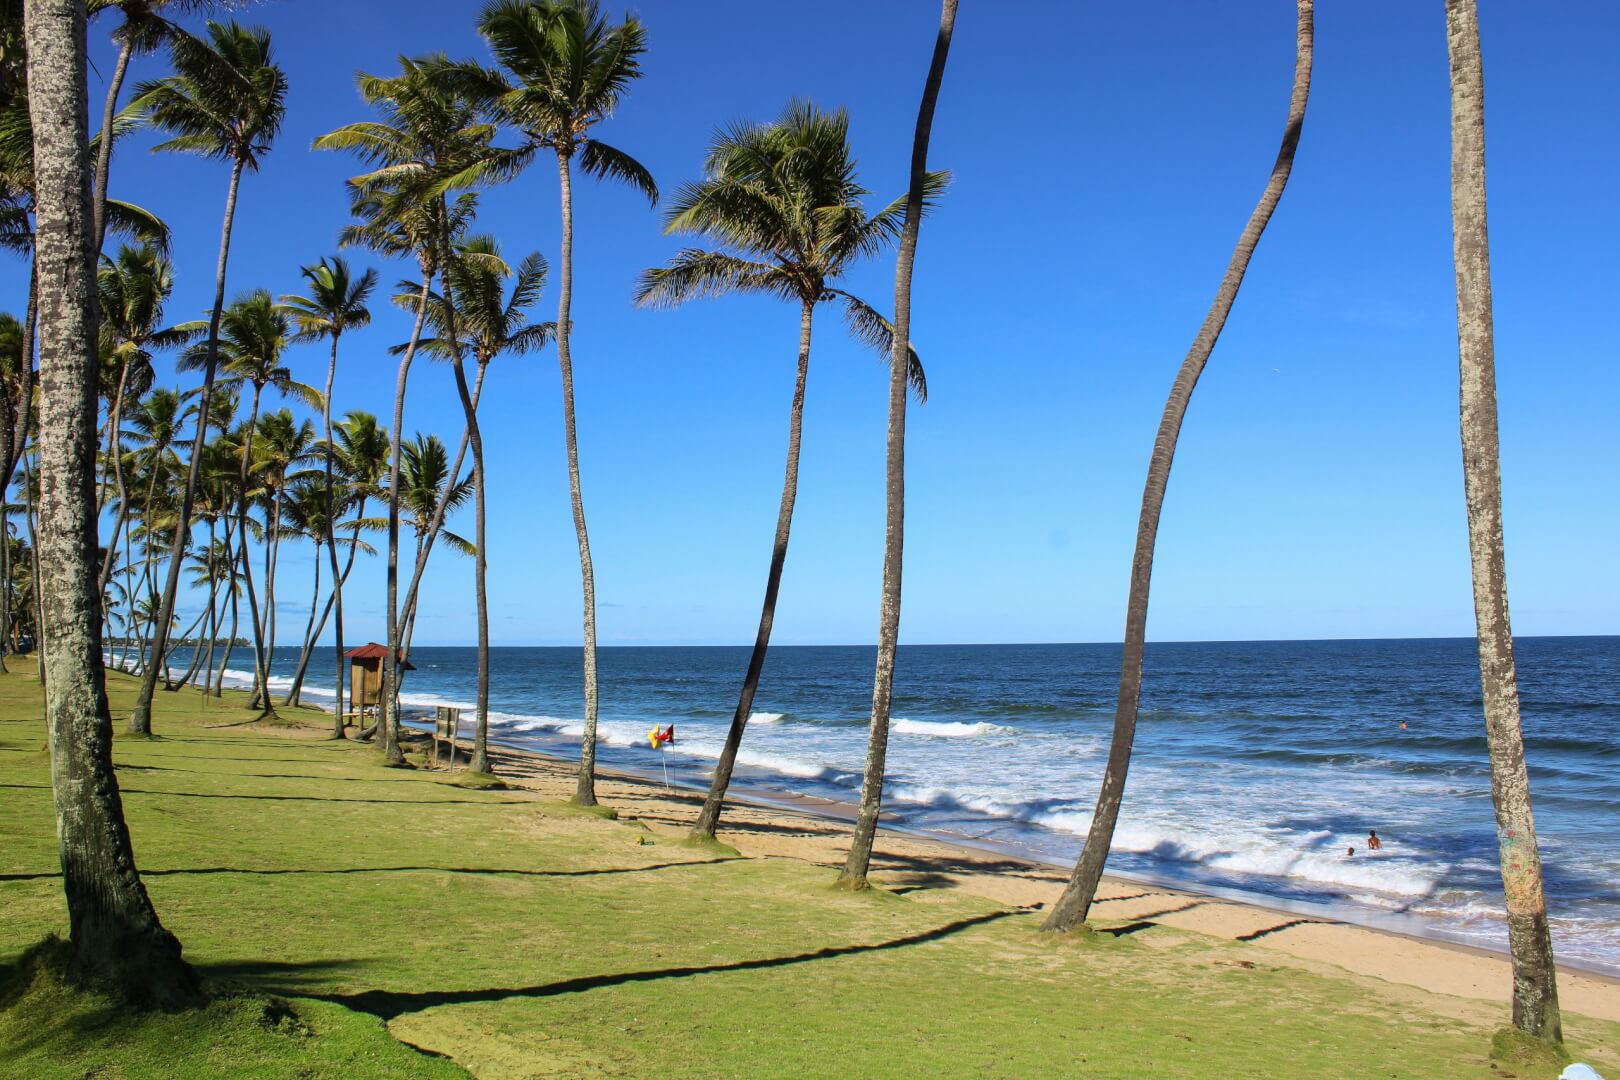 Vista da praia Lauro de Freitas, com várias palmeiras em um gramado que leva à areia